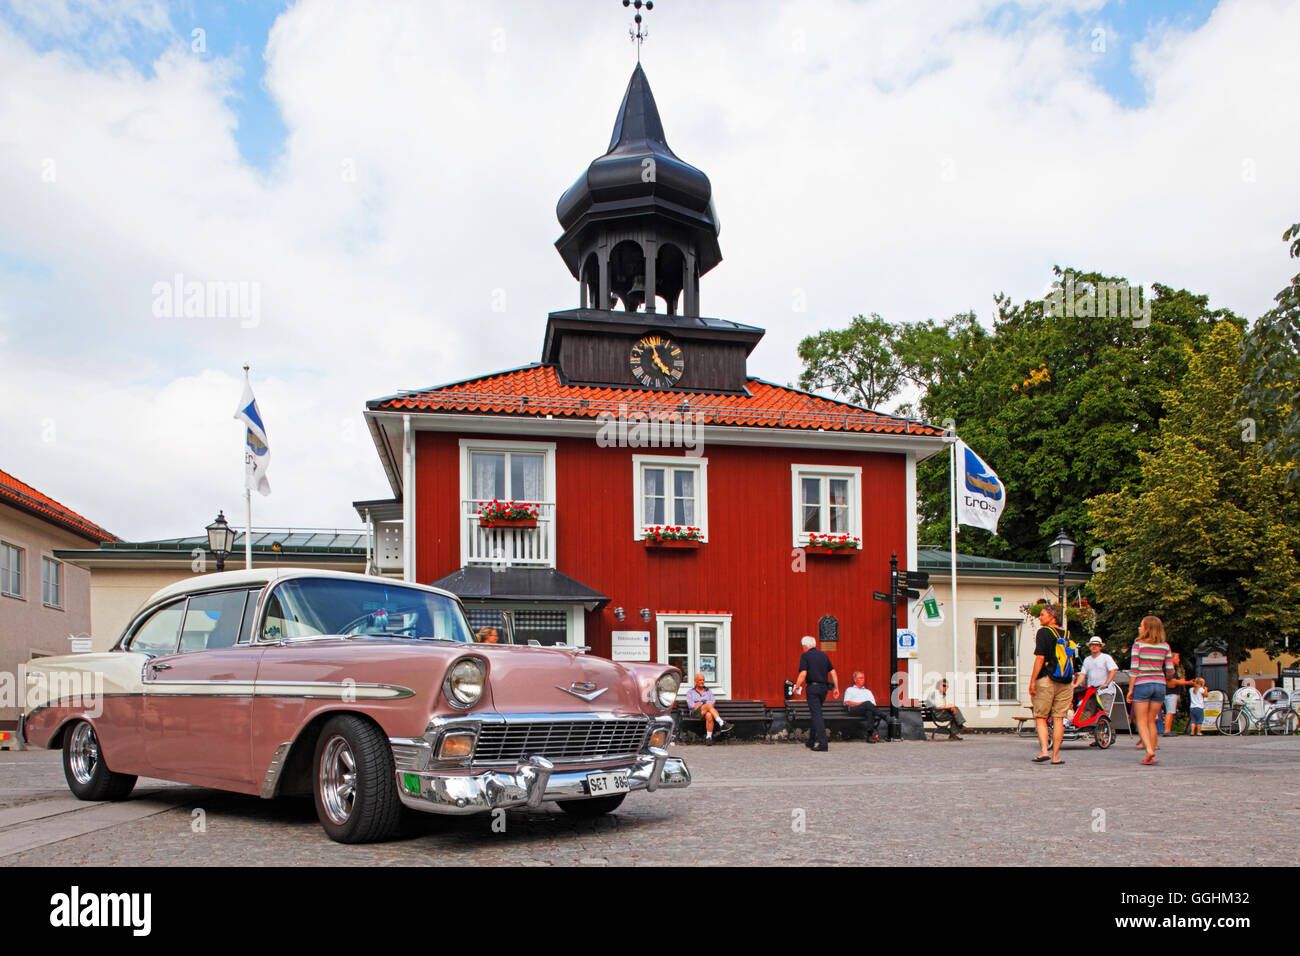 Rallye de coches clásicos y ayuntamiento, Trosa Trosa, Suecia Foto de stock